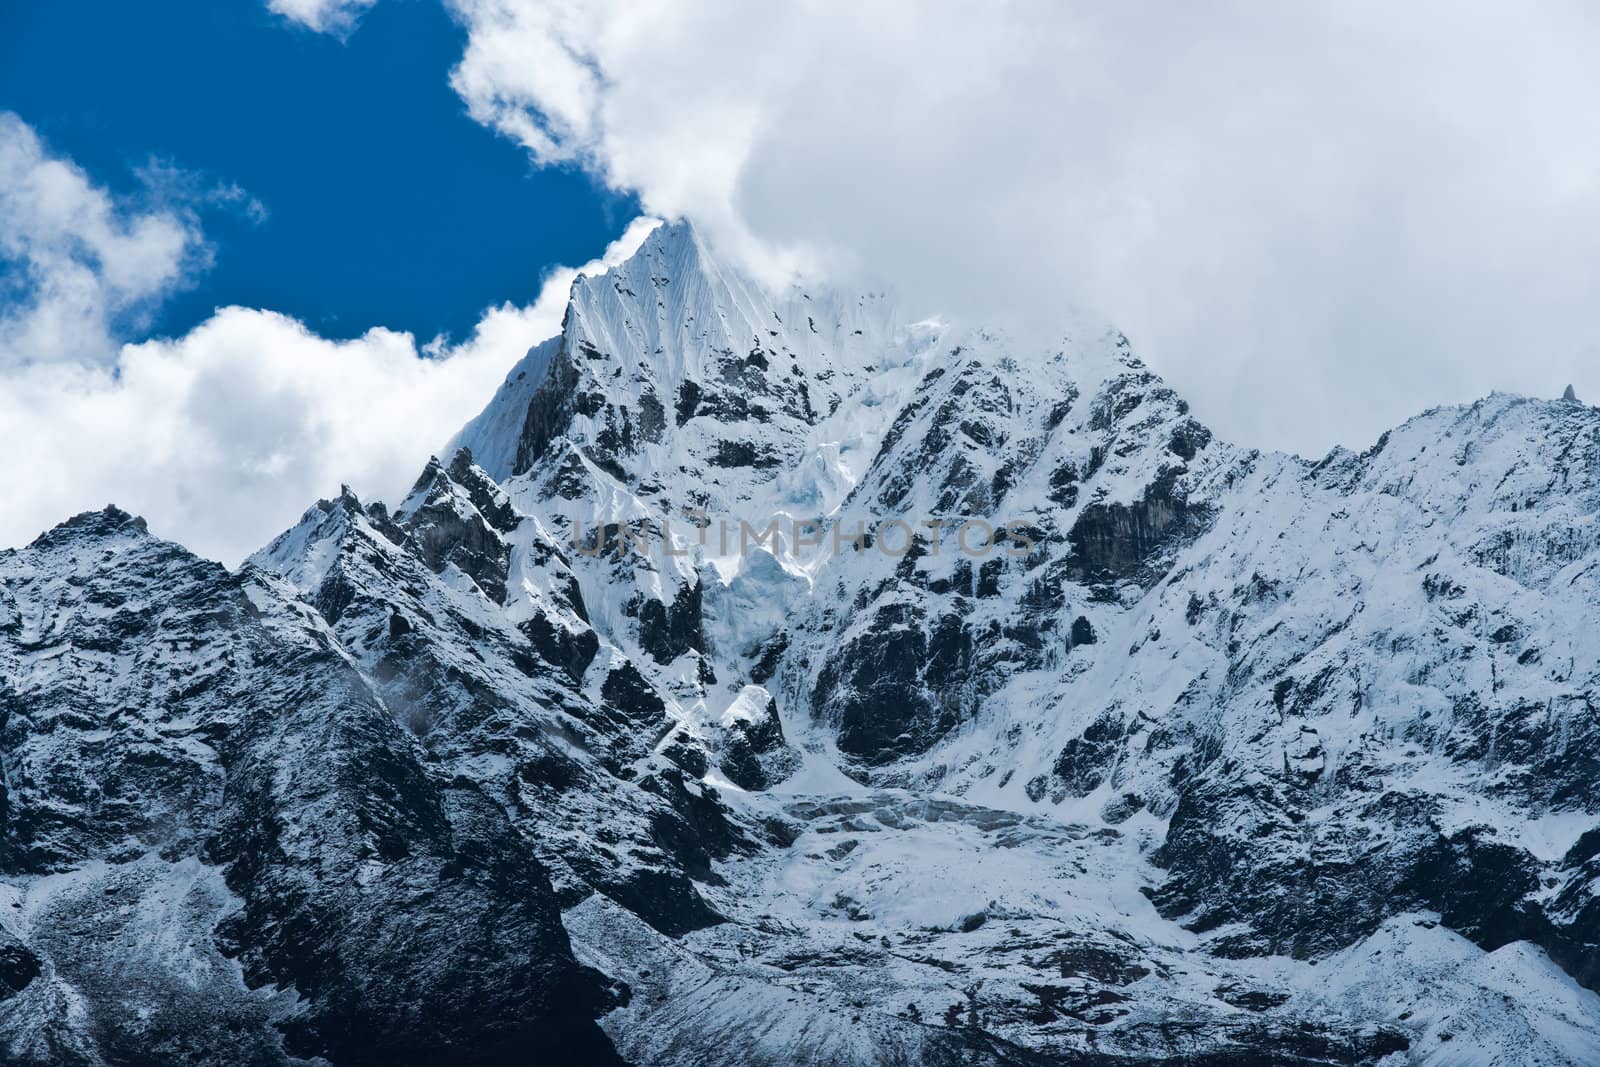 Thamserku Mountain peak in Himalayas, Nepal. Sagarmatha National Park